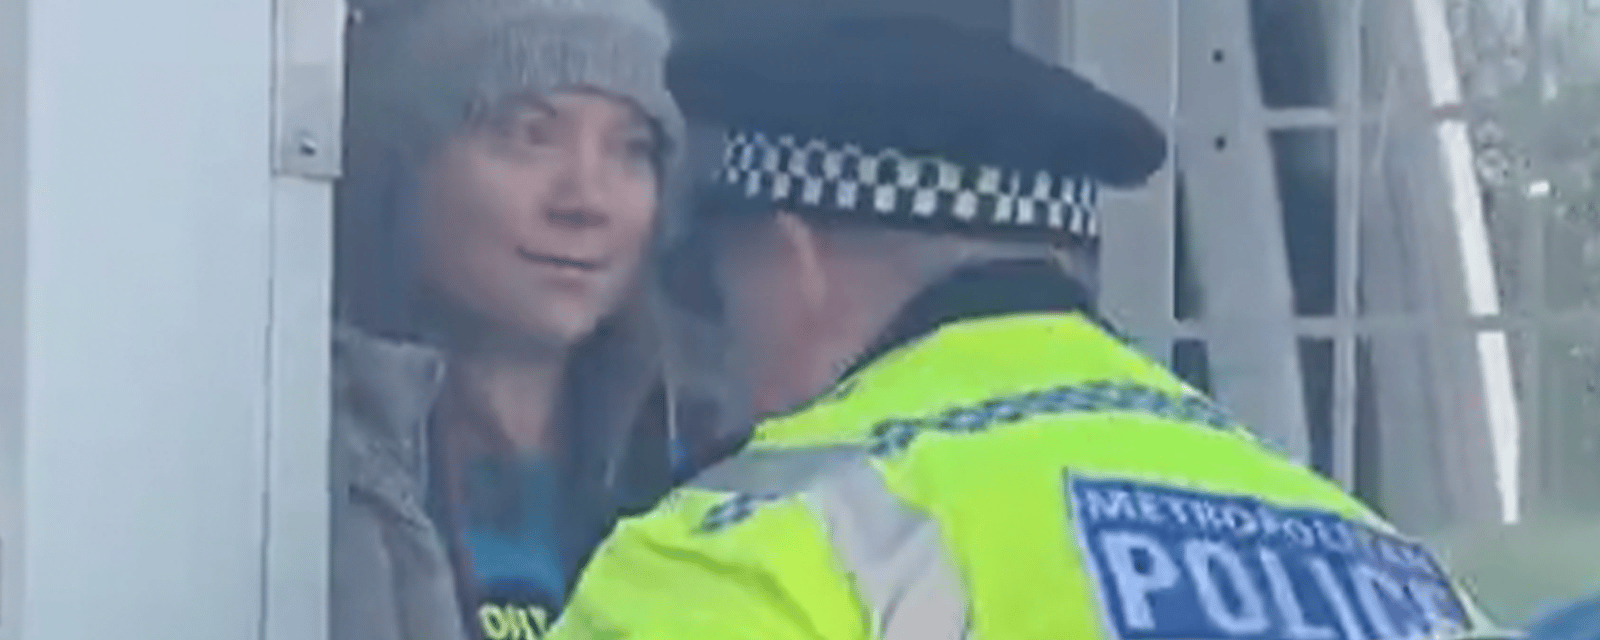 Greta Thunberg a été arrêtée par la police de Londres 